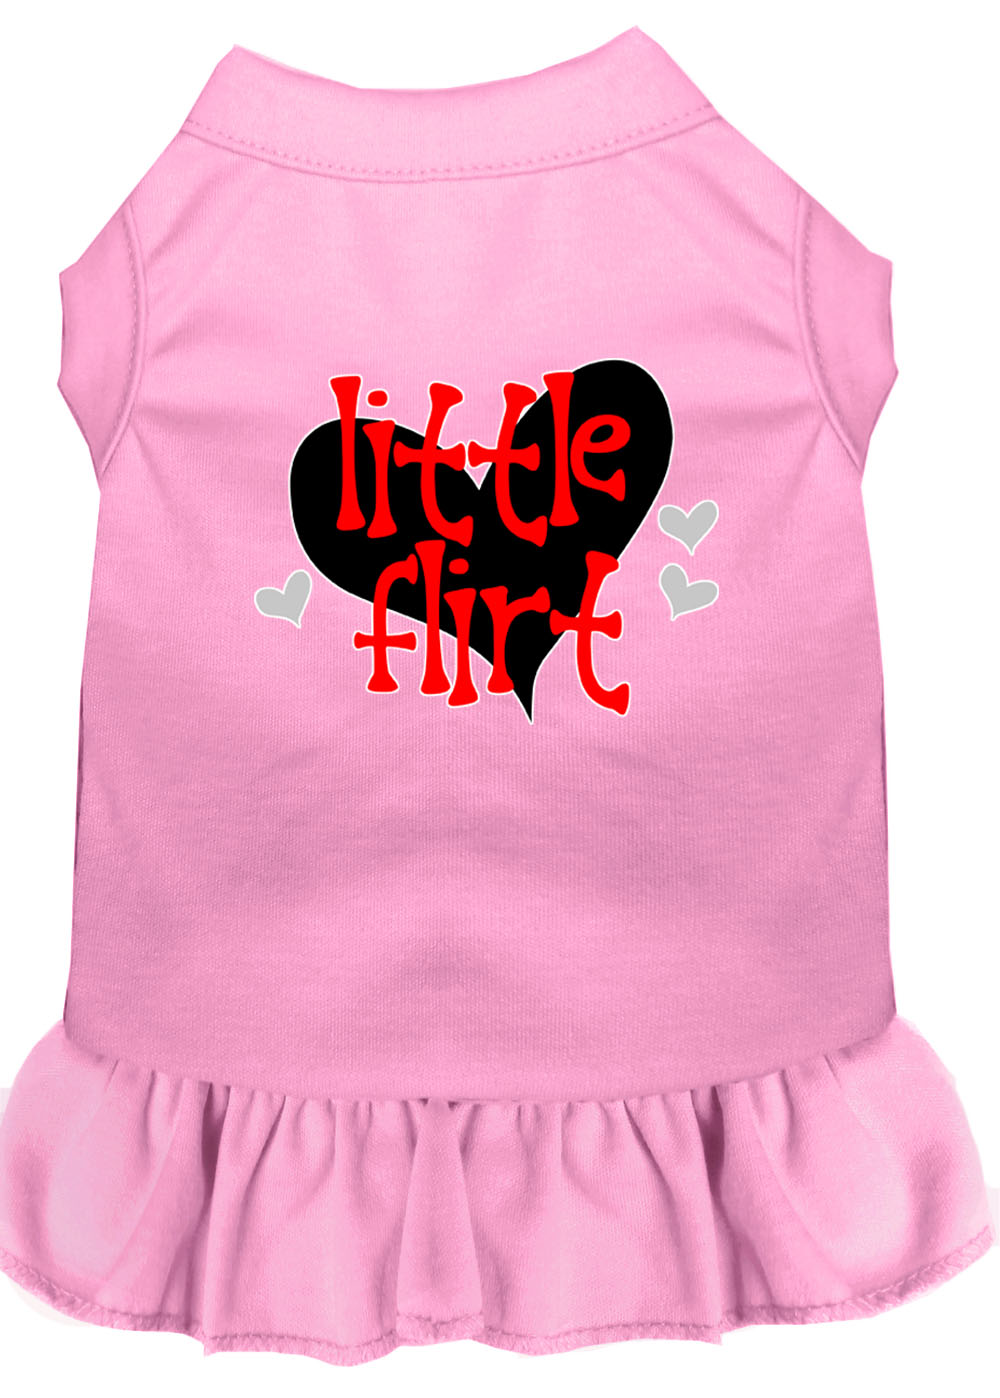 Little Flirt Screen Print Dog Dress Light Pink Med